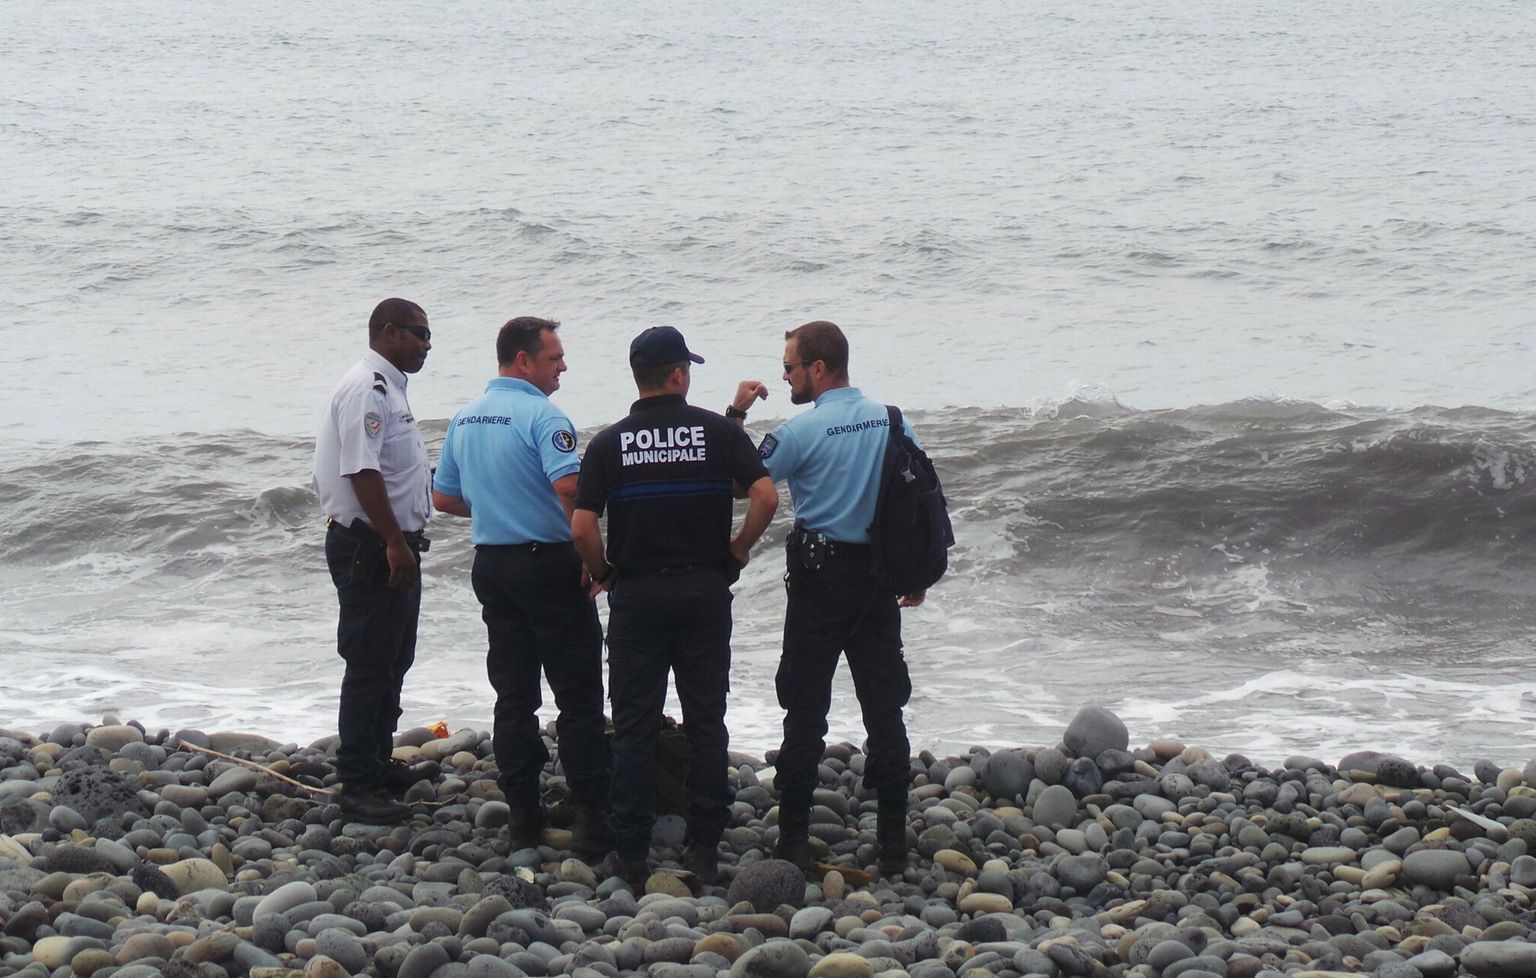 Prantsuse politsei ja sandarmid Saint-André rannas.